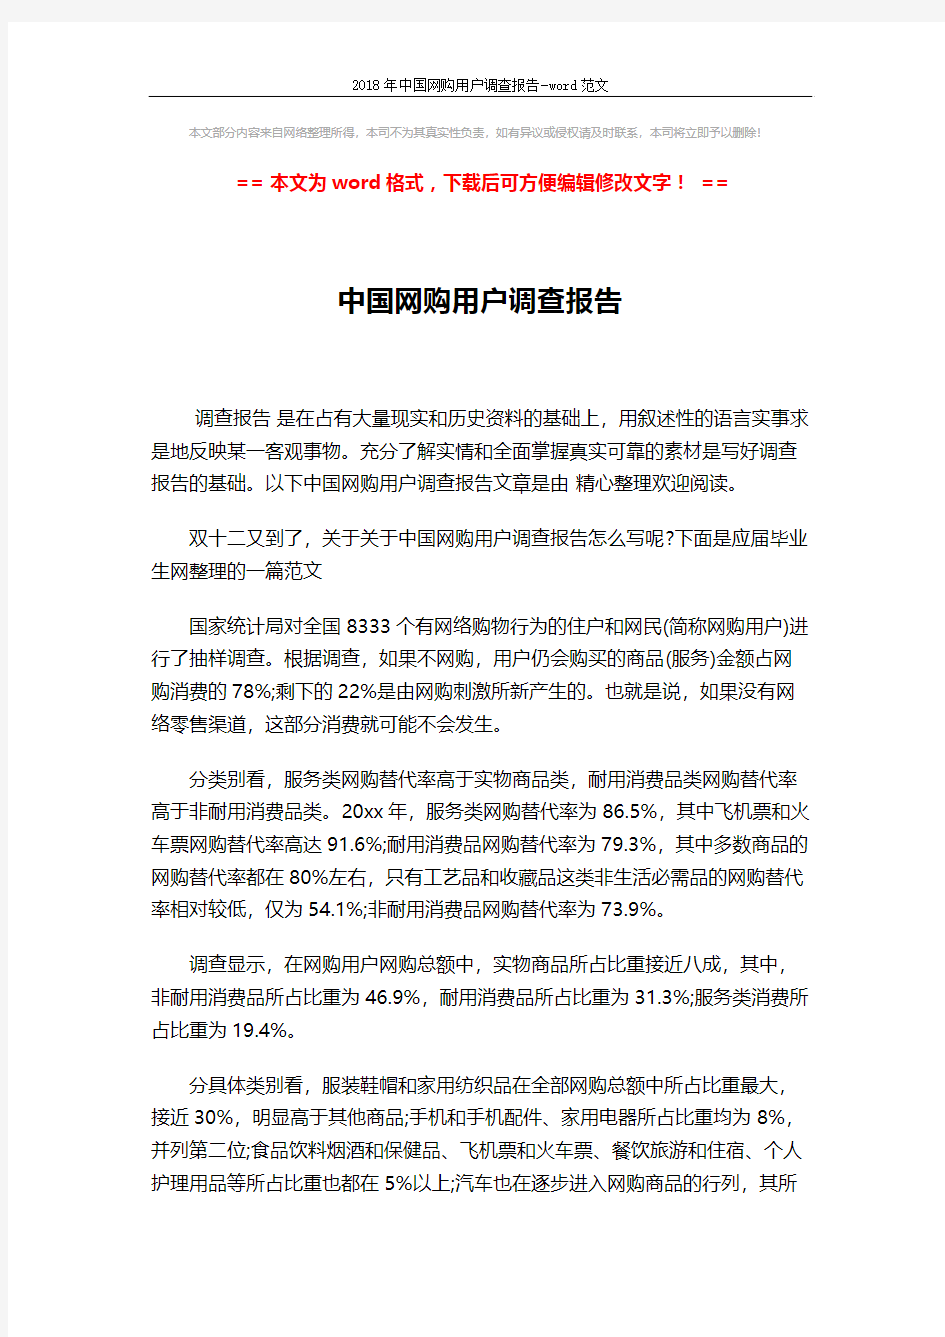 2018年中国网购用户调查报告-word范文 (2页)